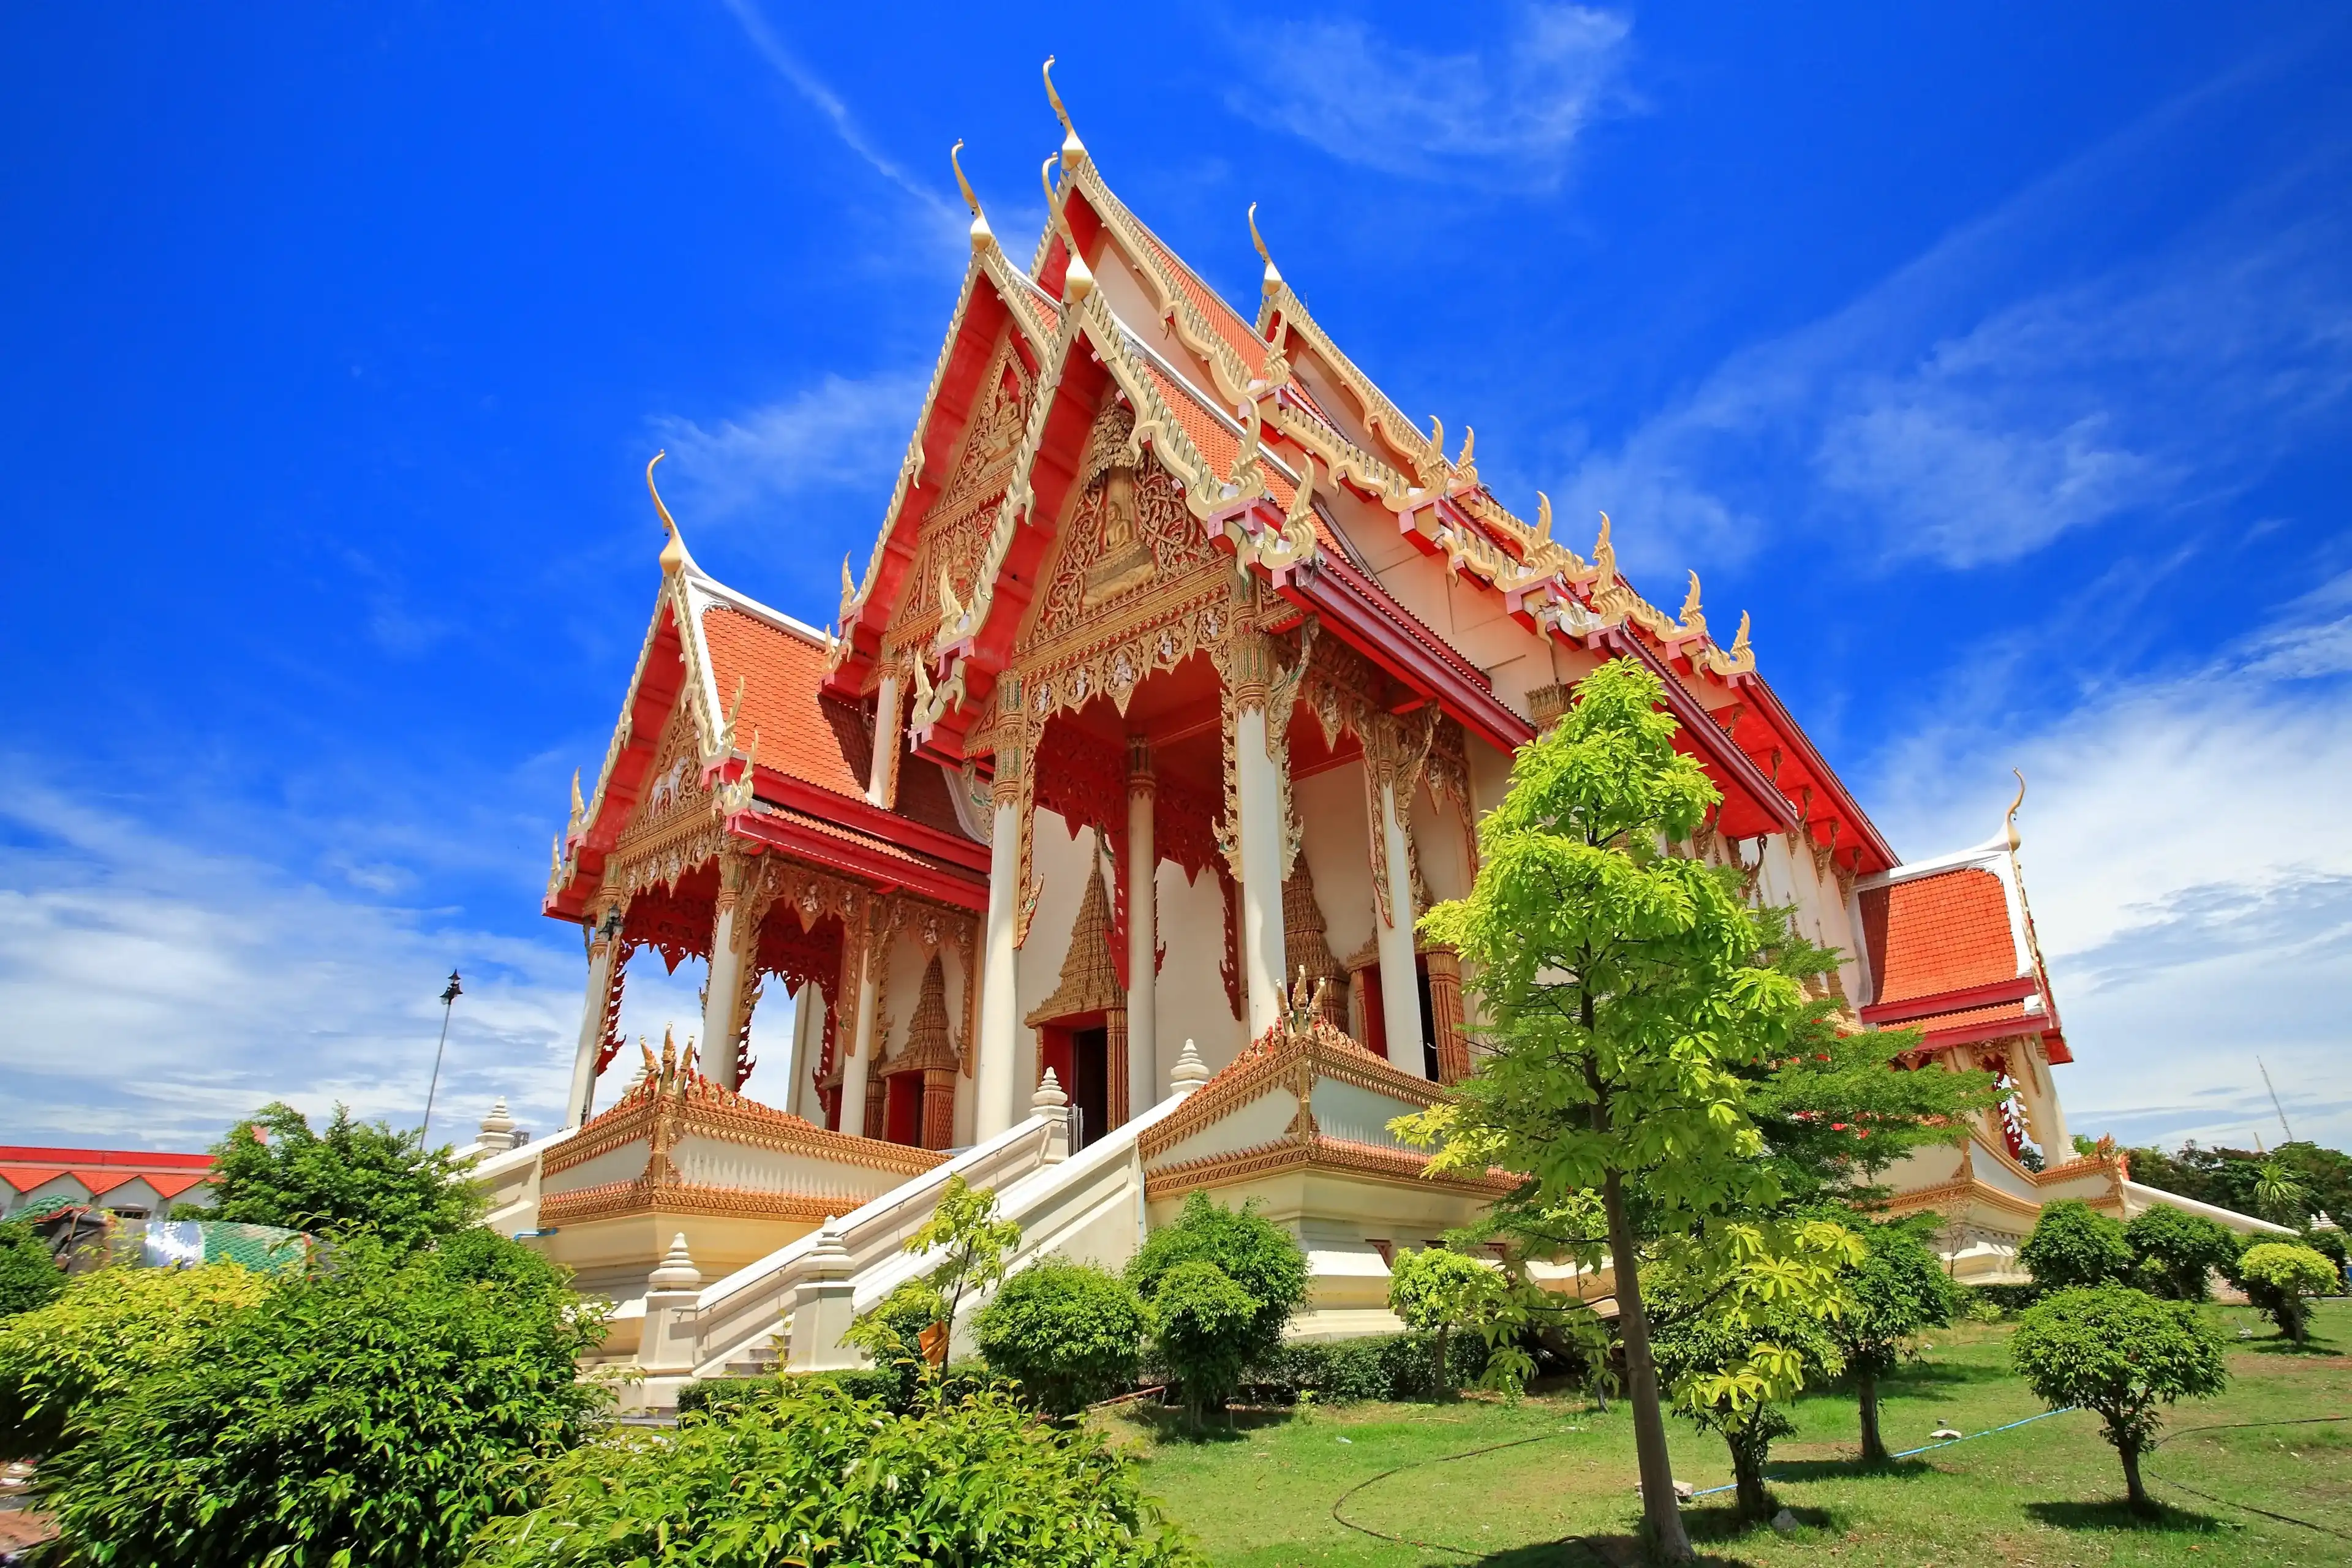 Samut Sakhon hotels. Best hotels in Samut Sakhon, Thailand